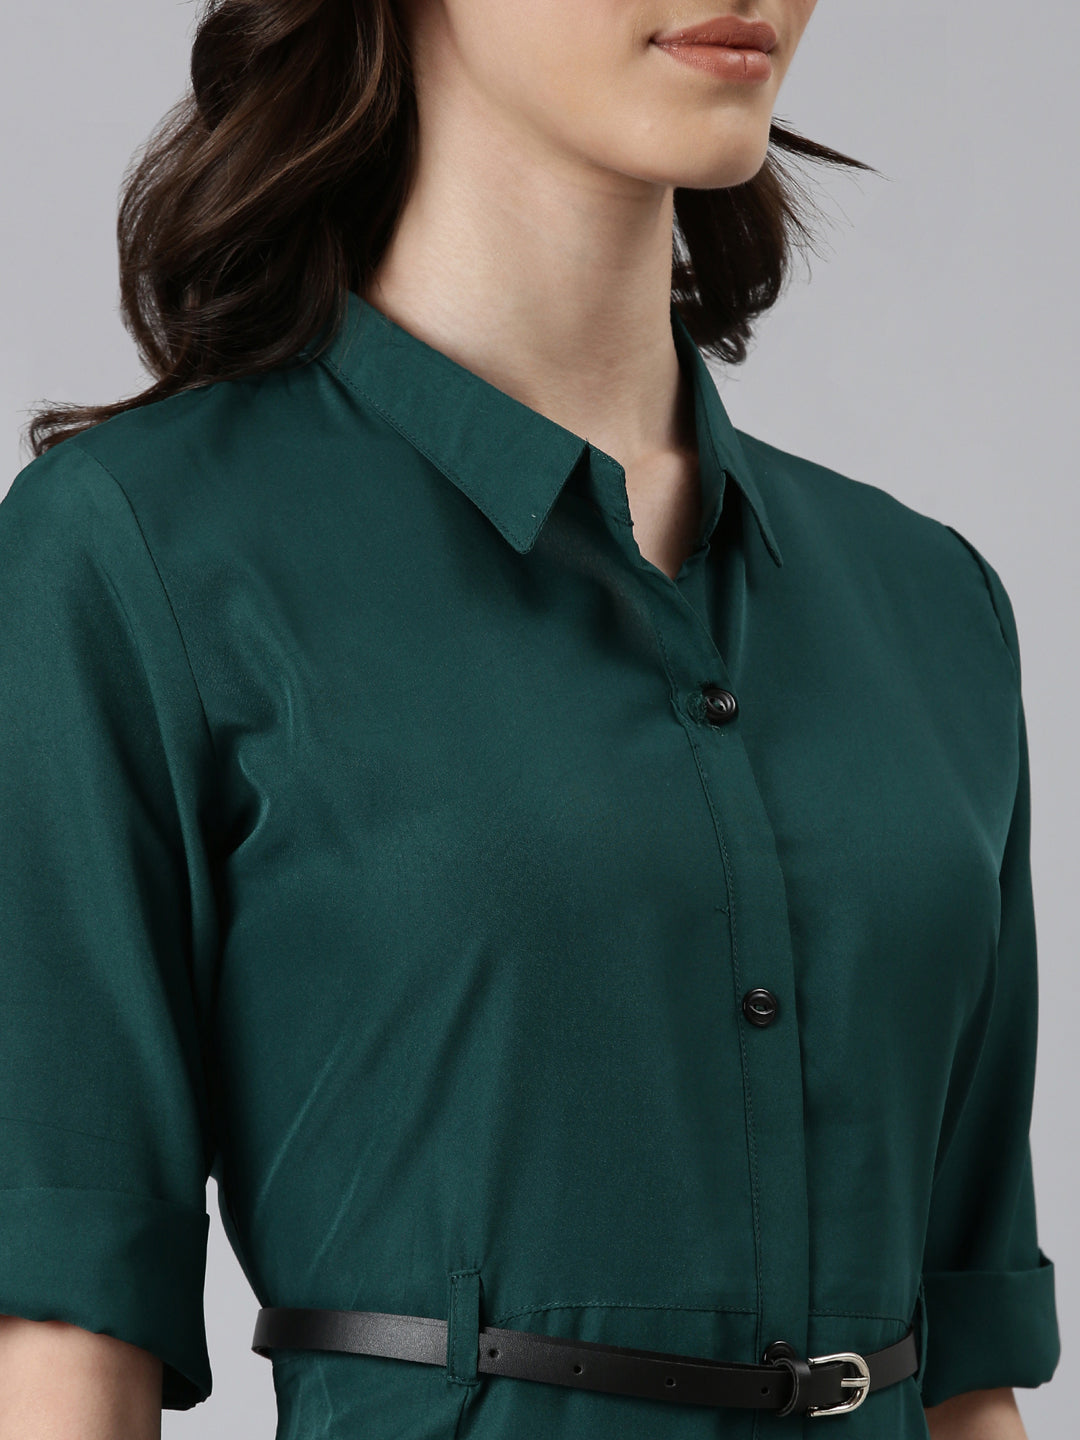 Women Green Solid Shirt Dress